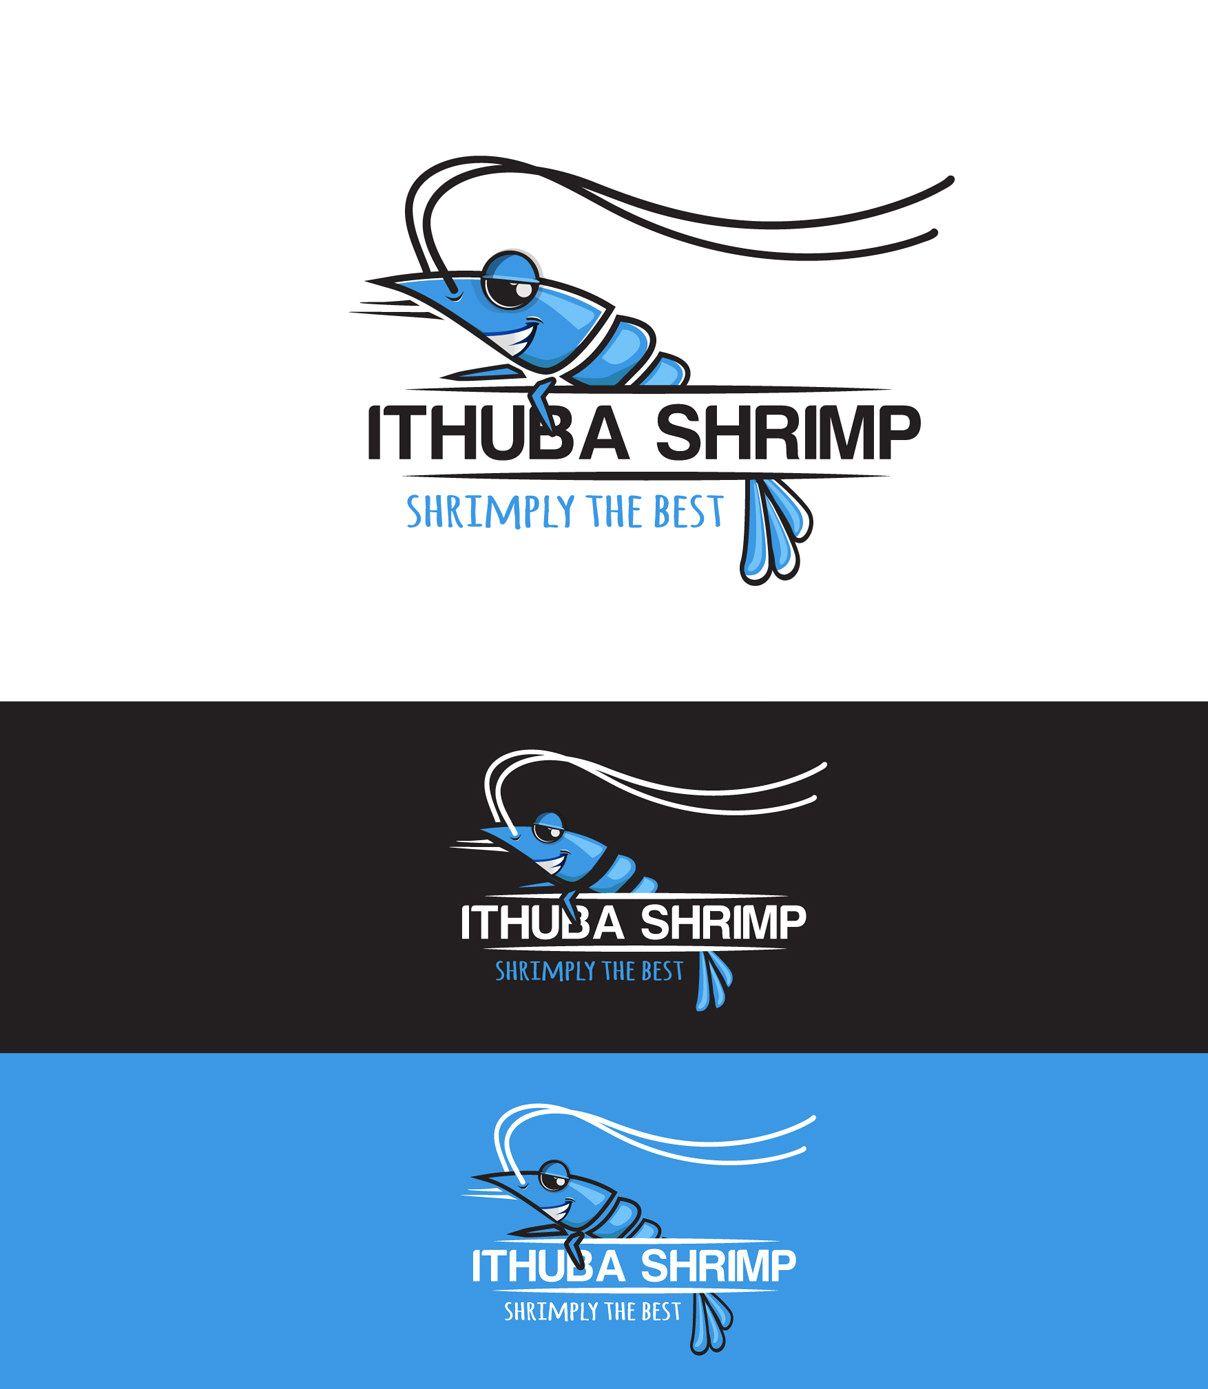 Shrimp Logo - Ithuba Shrimp | Milica Bogdanic Designs